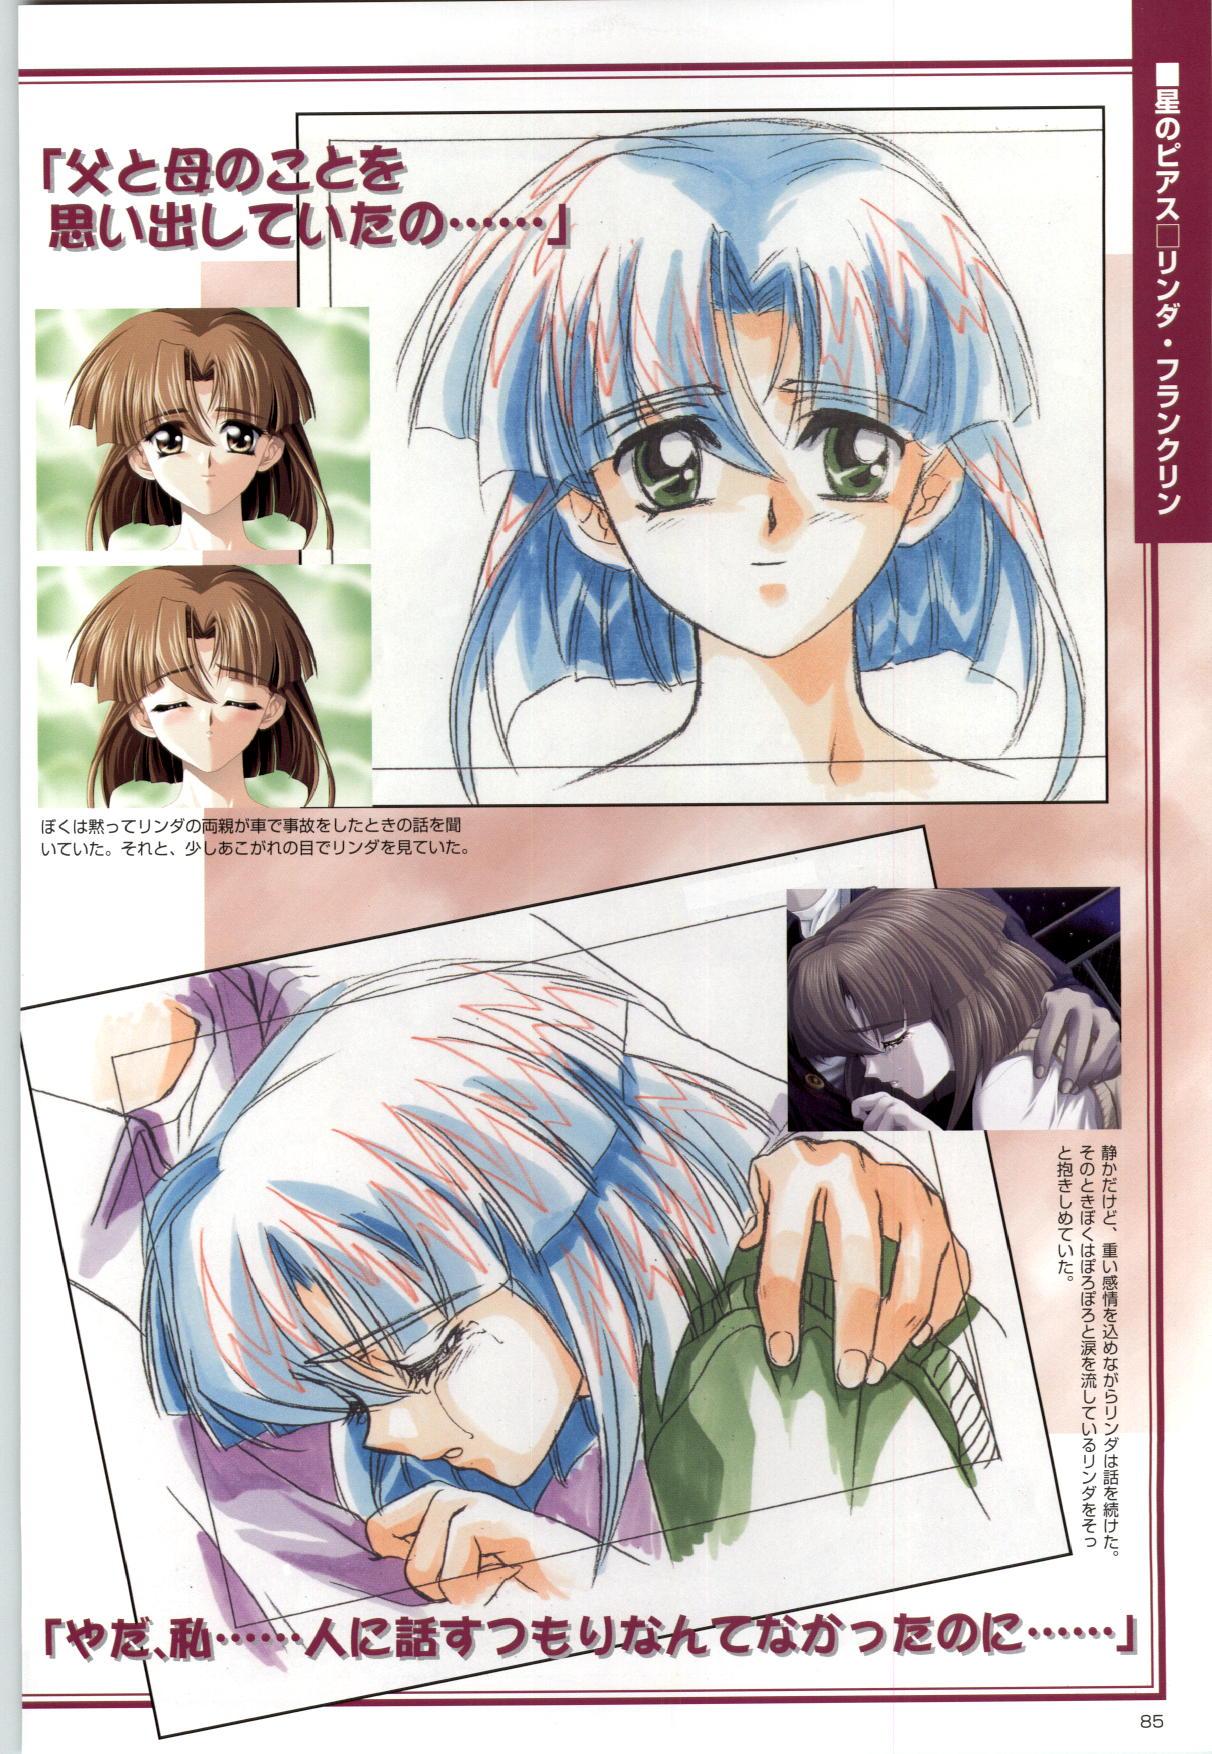 [Kinmedai Pink] ACTRESS Collection Kizuna + Seduce ~Yuuwaku~ + Hoshi no Pierce Computer Graphics & Original Pictures 85